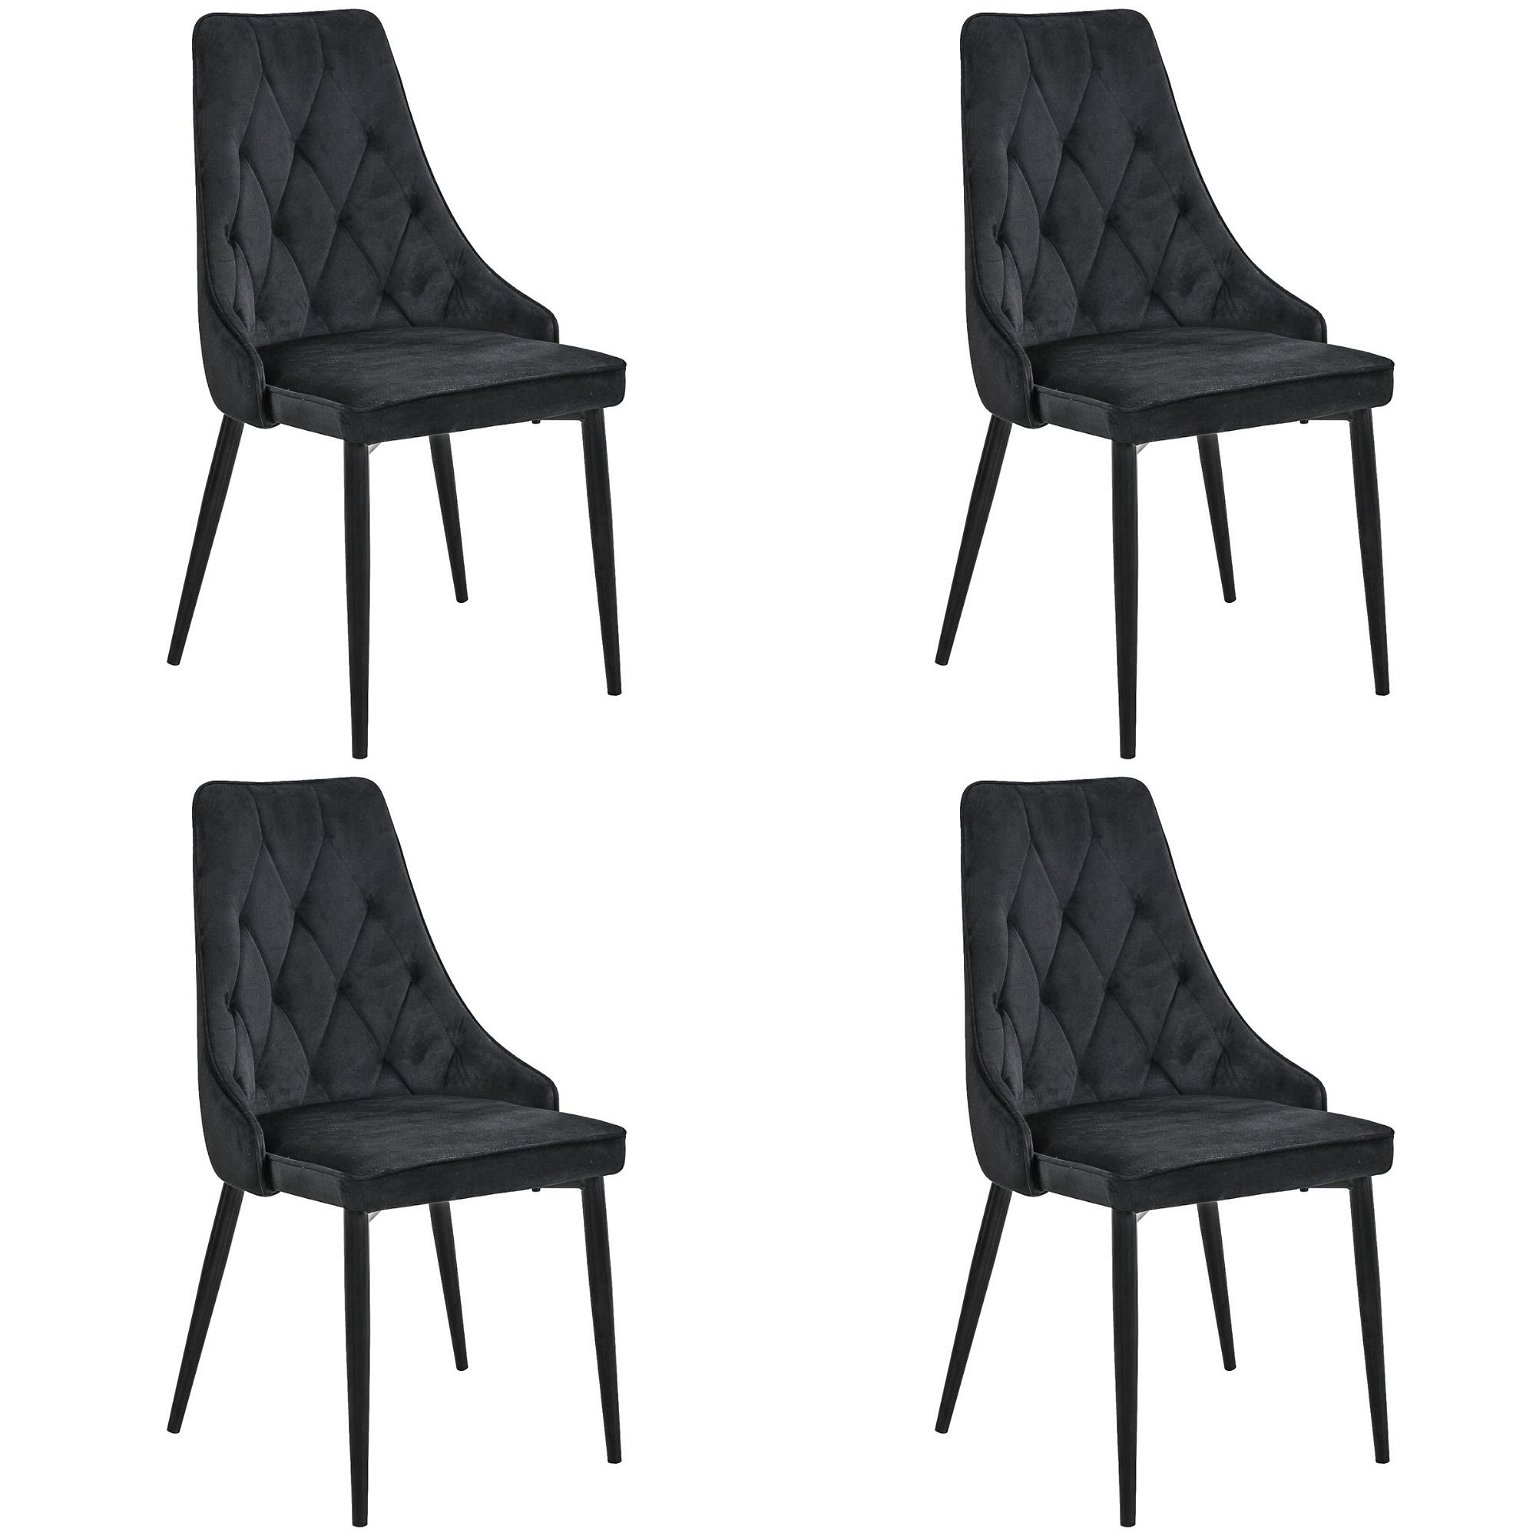 4-ių kėdžių komplektas SJ.054, juoda